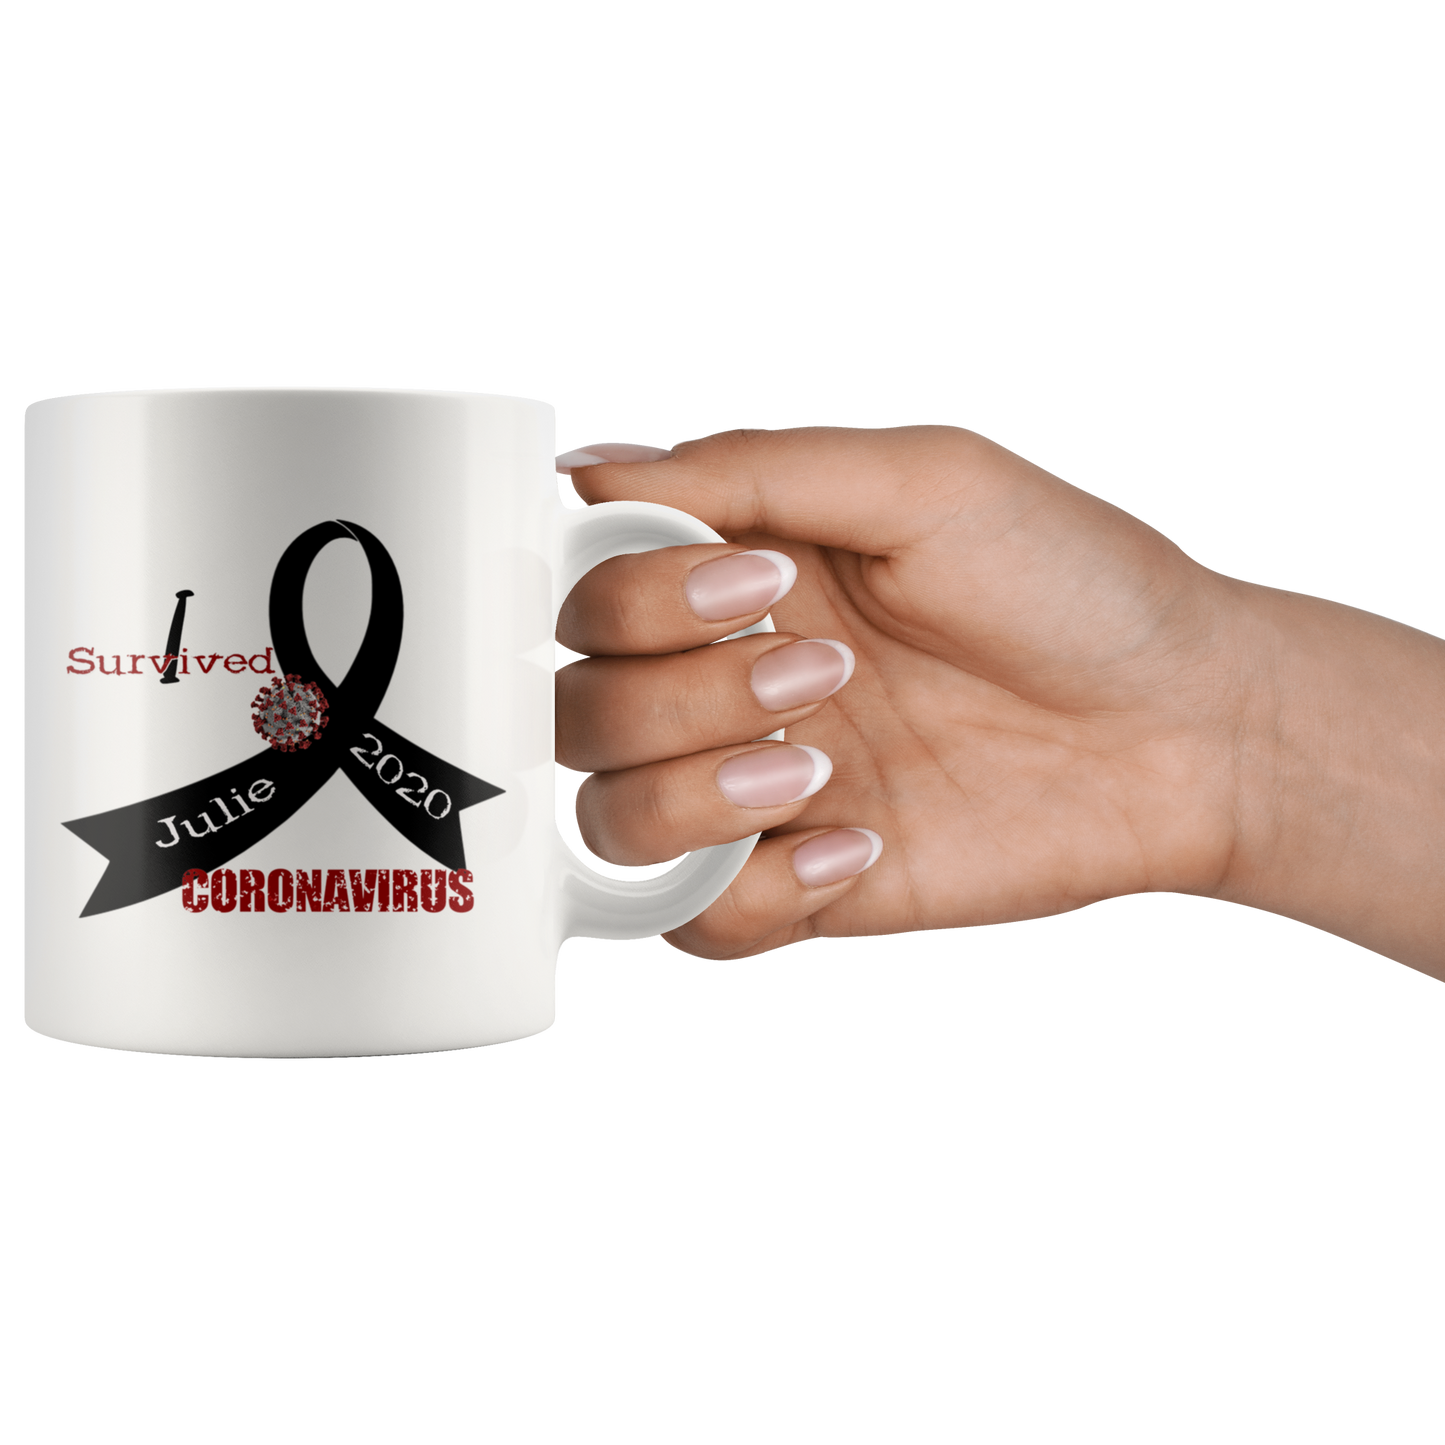 Personalized "I Survived" Coronavirus Mug